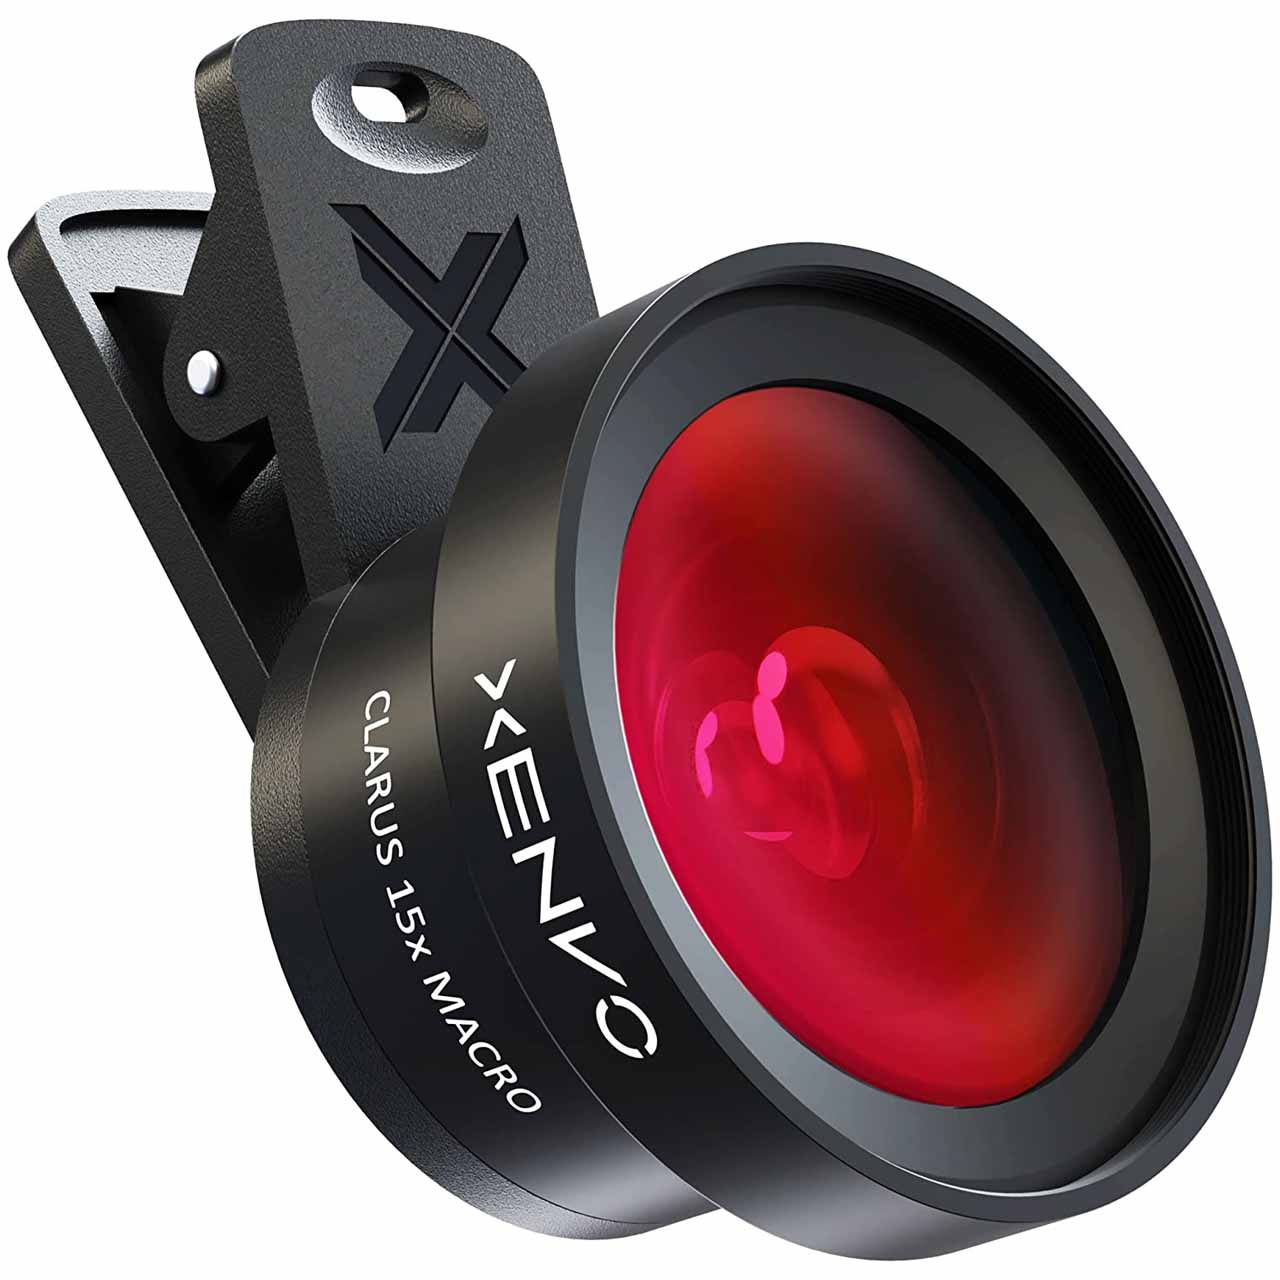 Xenvo Pro Lens Kit BEST Mobile Camera Lens DSLR Smartphone camera lens on Amazon Technuto 01